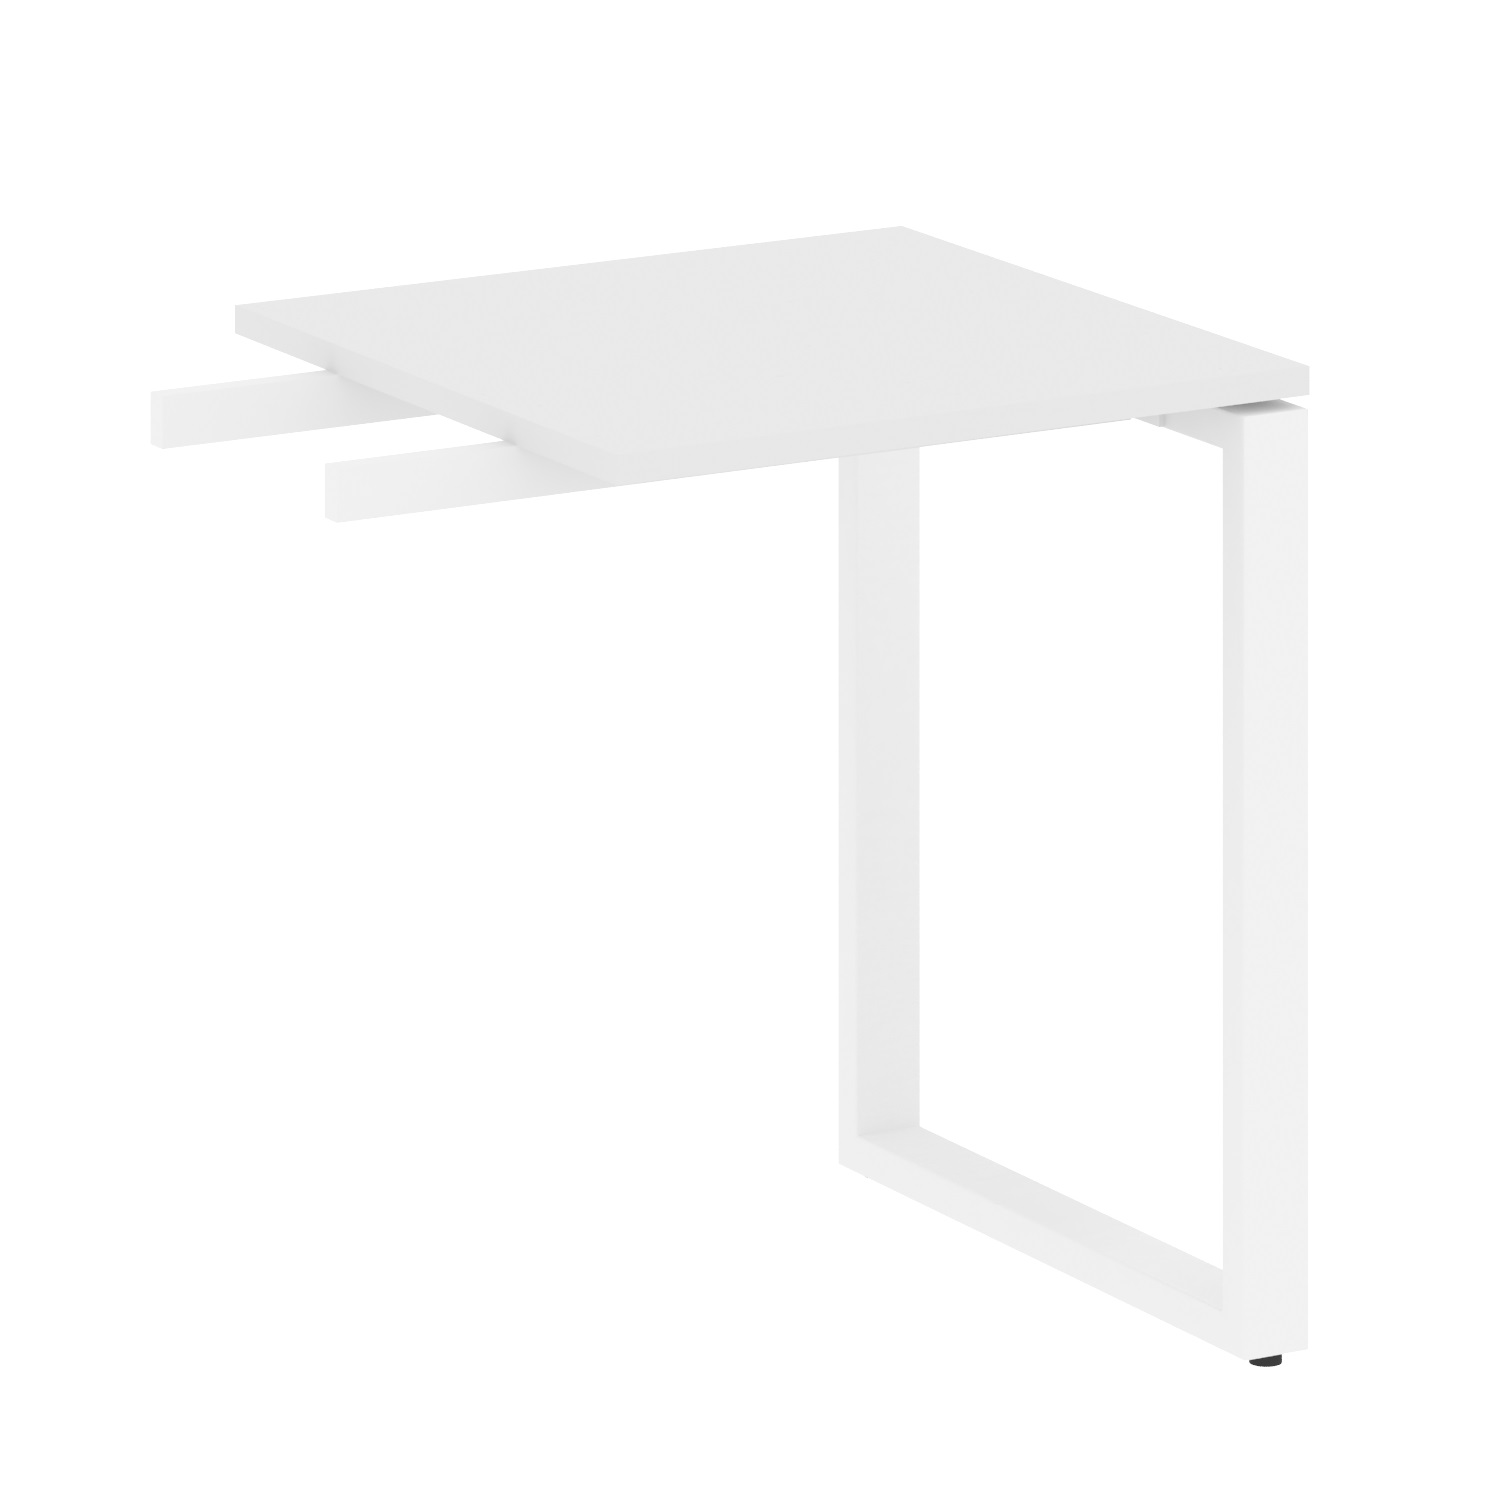 Приставка пр 2. Приставной элемент к столу. Угол приставной белый. Стол приставной 30 на 40. Брифинг-приставка к рабочему столу Steel 11700 белый/металл белый.